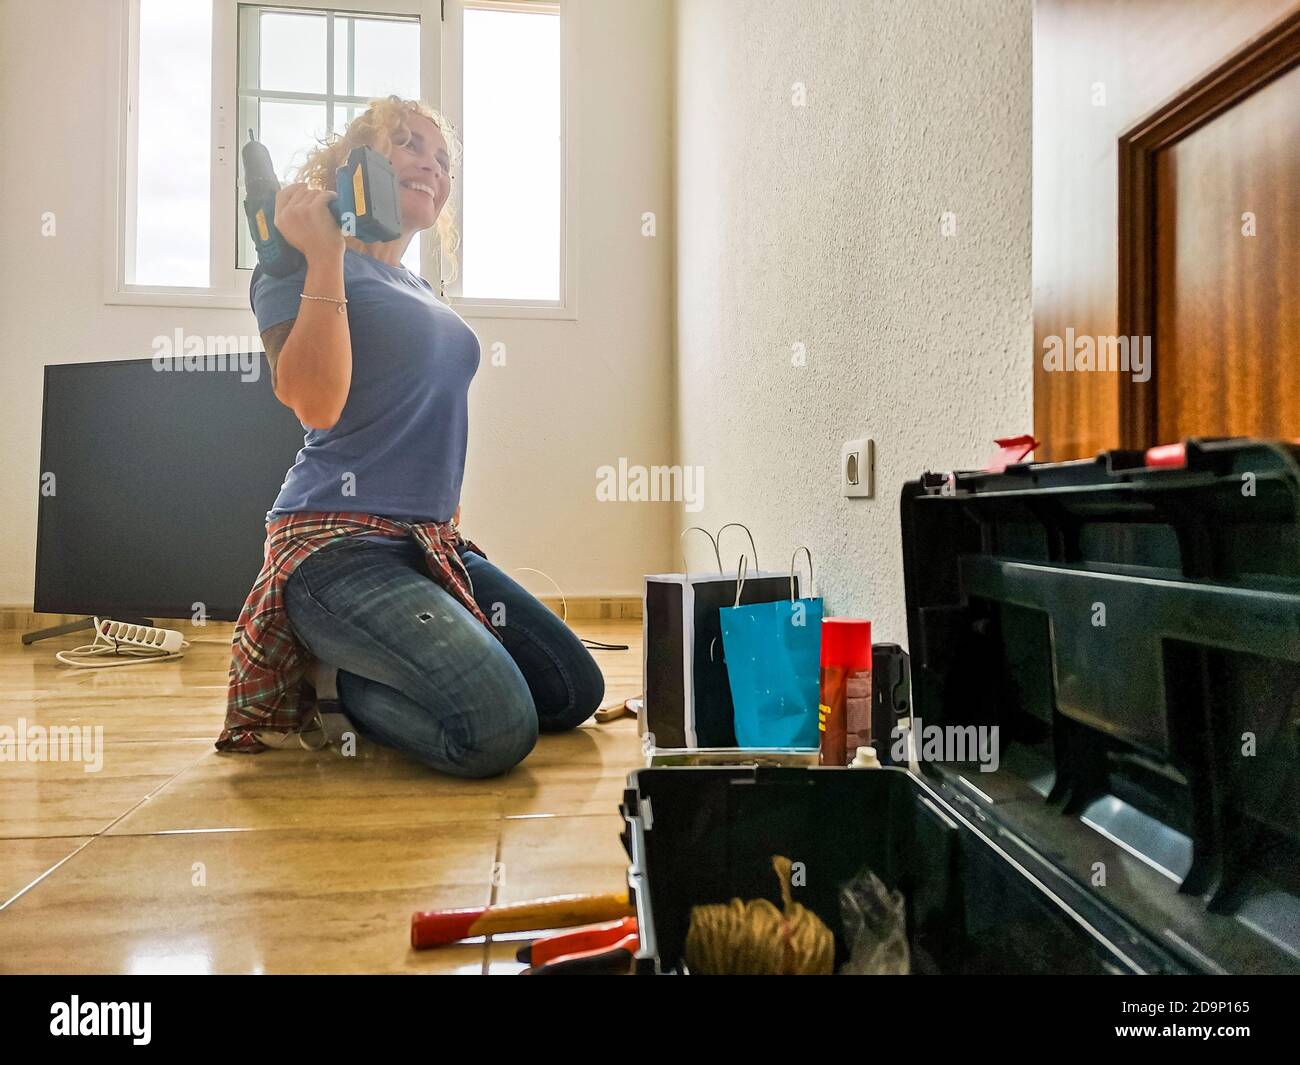 Una mujer feliz y cansada descansa en el piso después de casa trabaja durante una hipoteca - nuevo concepto de casa y vida - las personas disfrutan de los trabajos de cambio y bricolaje - concepto de independencia para mujer Foto de stock